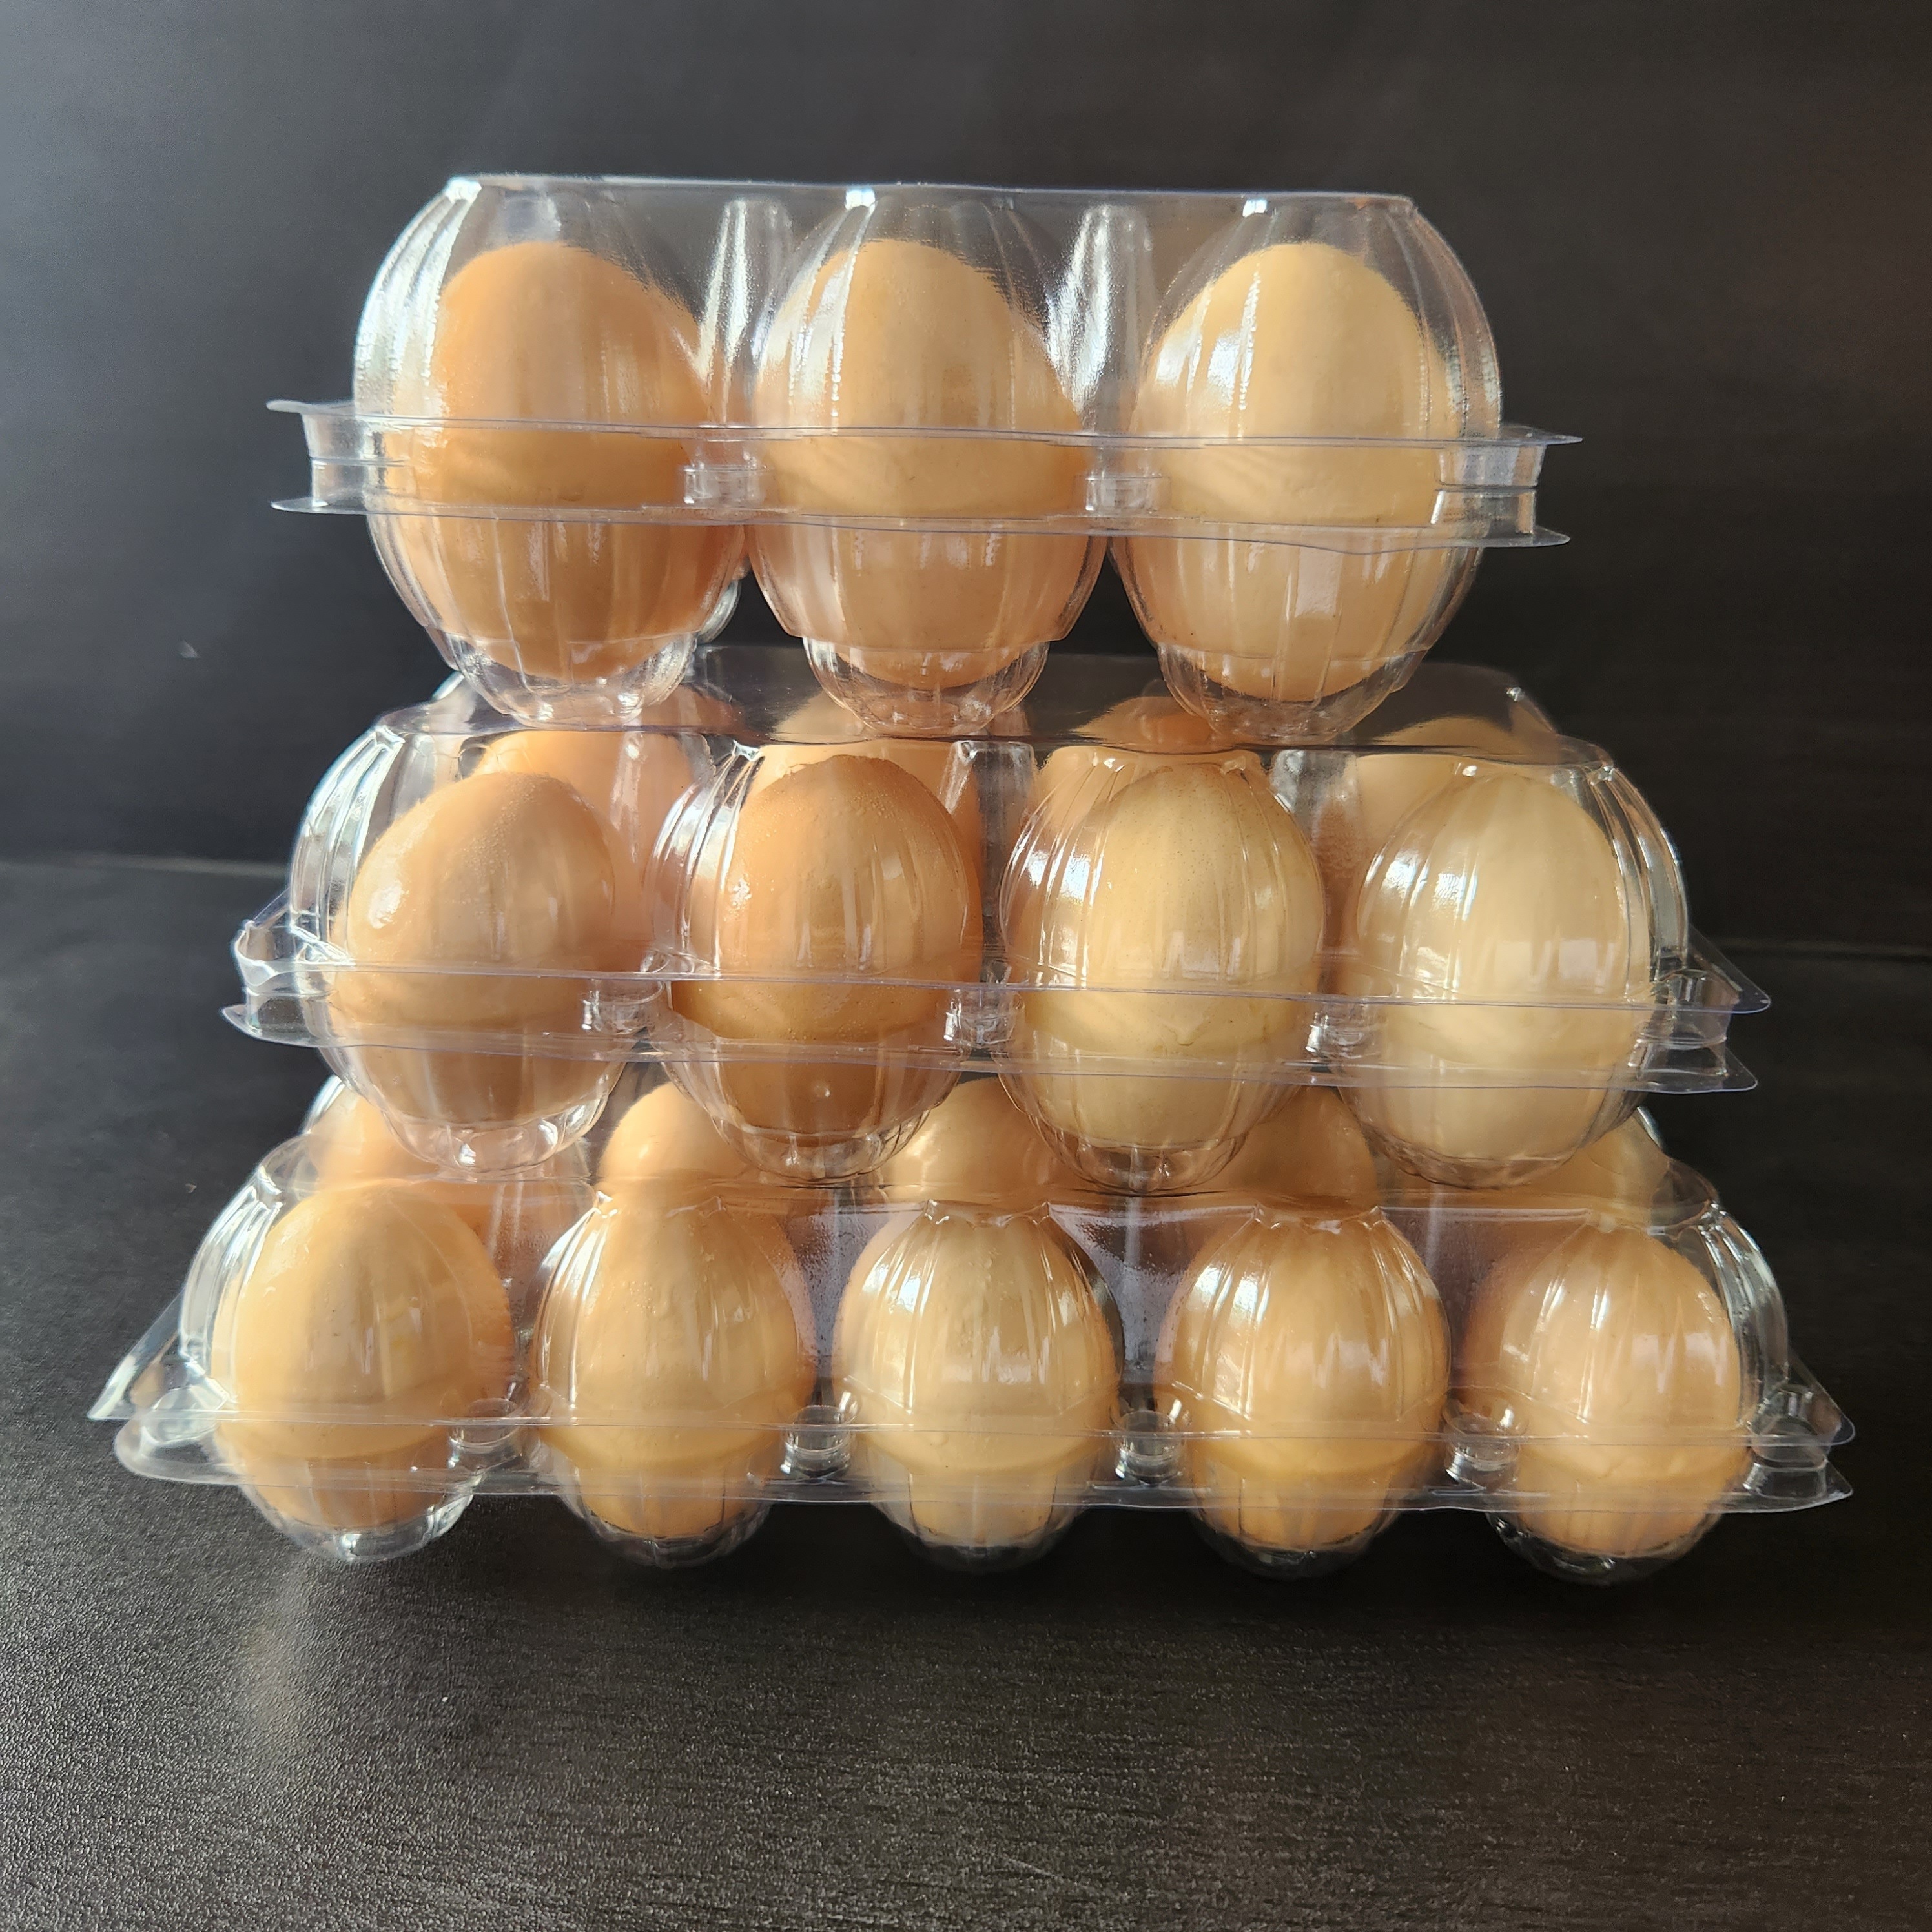 Caja de Huevos Cajas de Huevos 10 Piezas Hueveras de Carton Cajas para  Huevos para Huevos o Huevos de Pato : : Industria, empresas y  ciencia